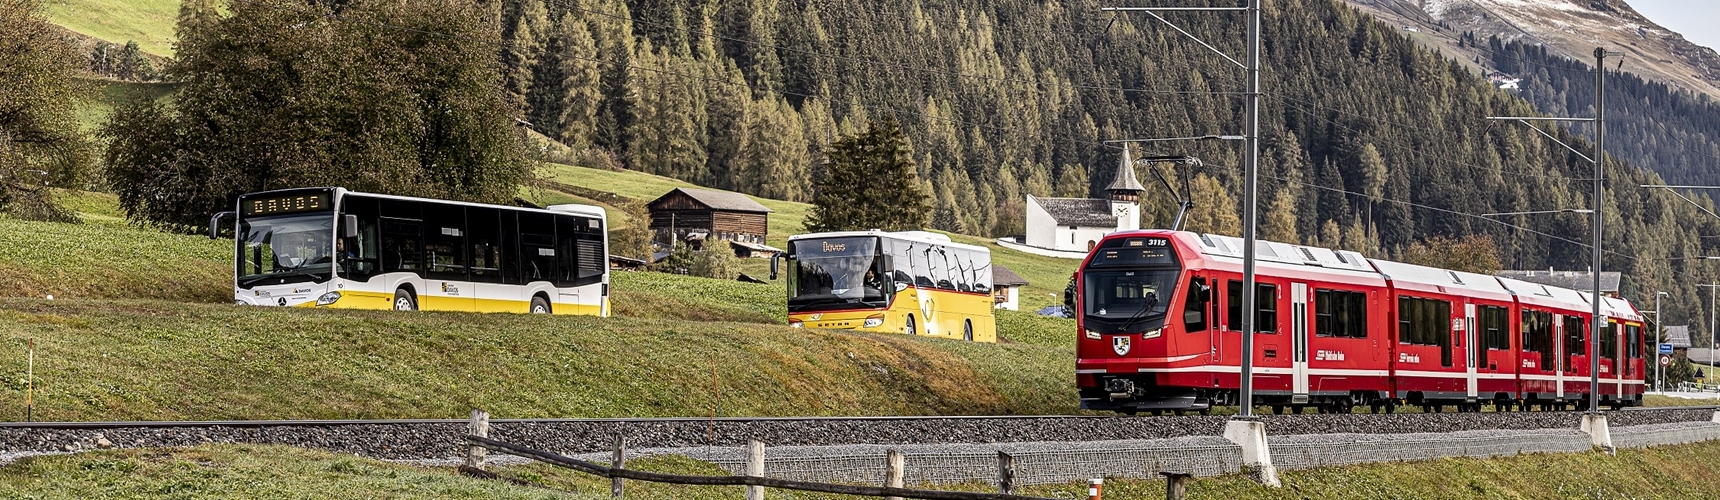 Der öffentliche Verkehr in Davos mit Vaubeedee, Postauto und Erhabee